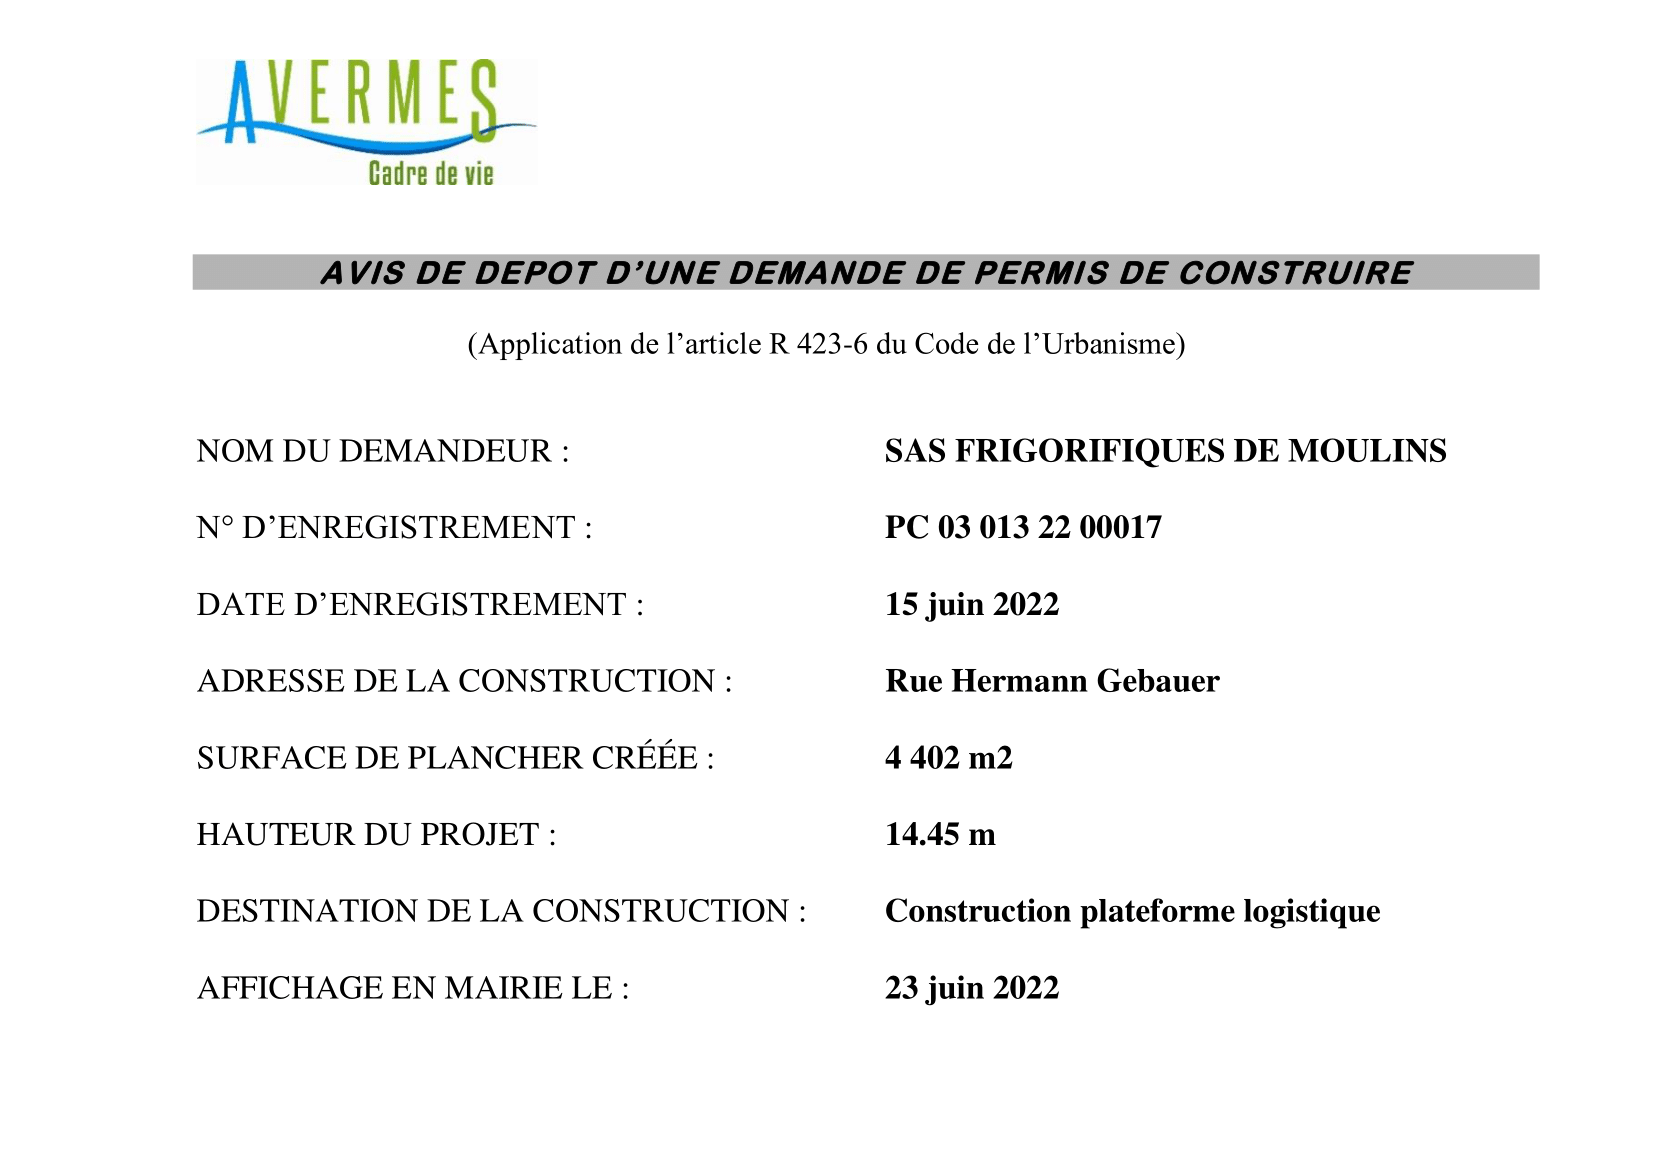 PC 22 00017 FRIGORIFIQUES DE MOULINS